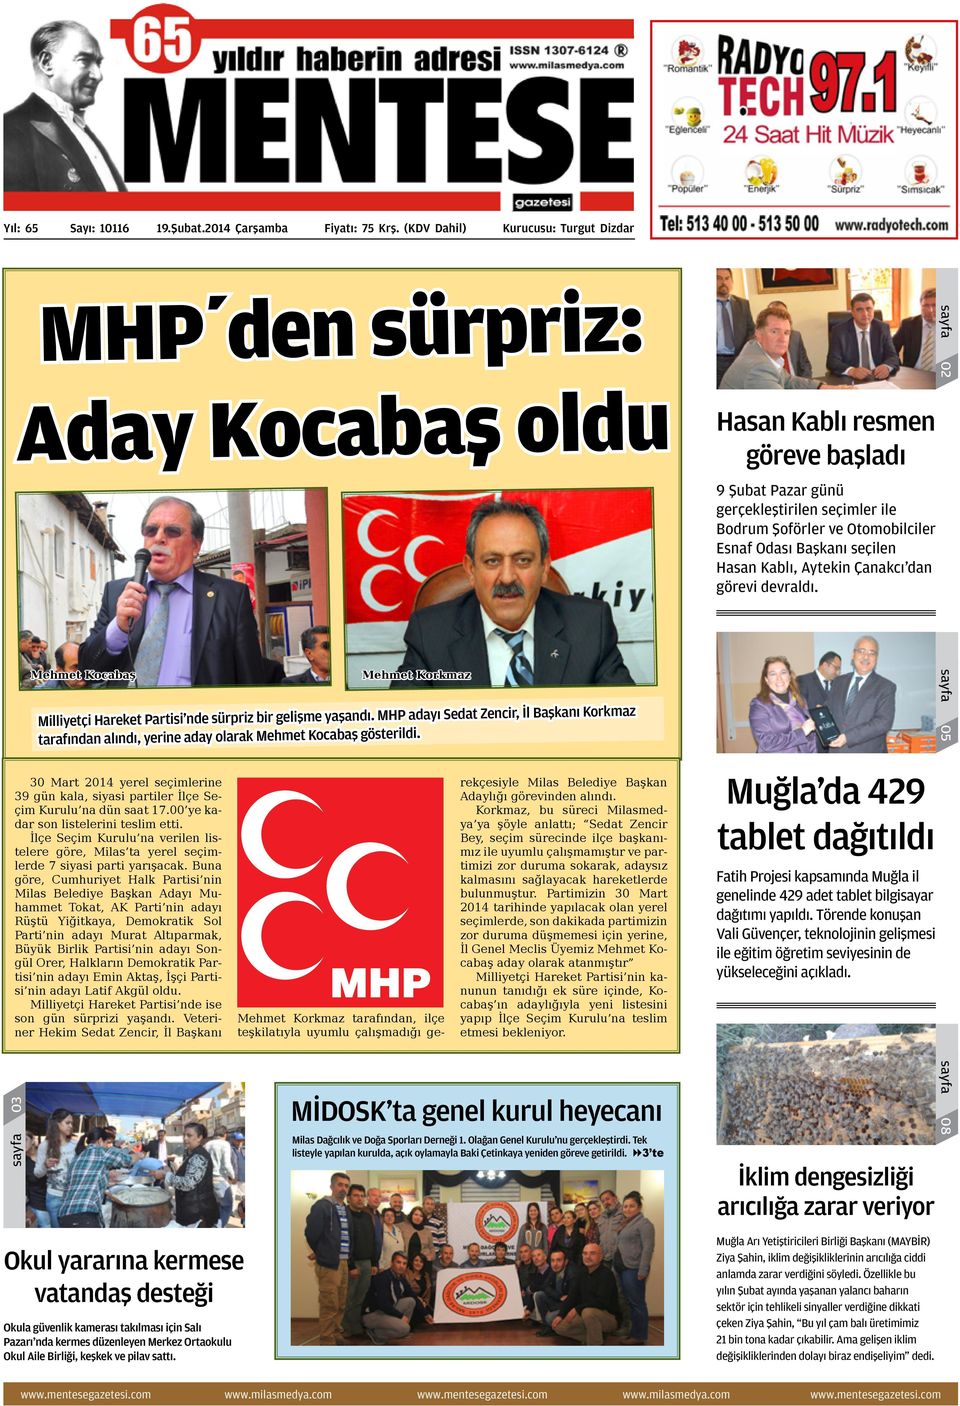 Esnaf Odası Başkanı seçilen Hasan Kablı, Aytekin Çanakcı dan görevi devraldı. sayfa 03 Mehmet Kocabaş Mehmet Korkmaz Milliyetçi Hareket Partisi nde sürpriz bir gelişme yaşandı.